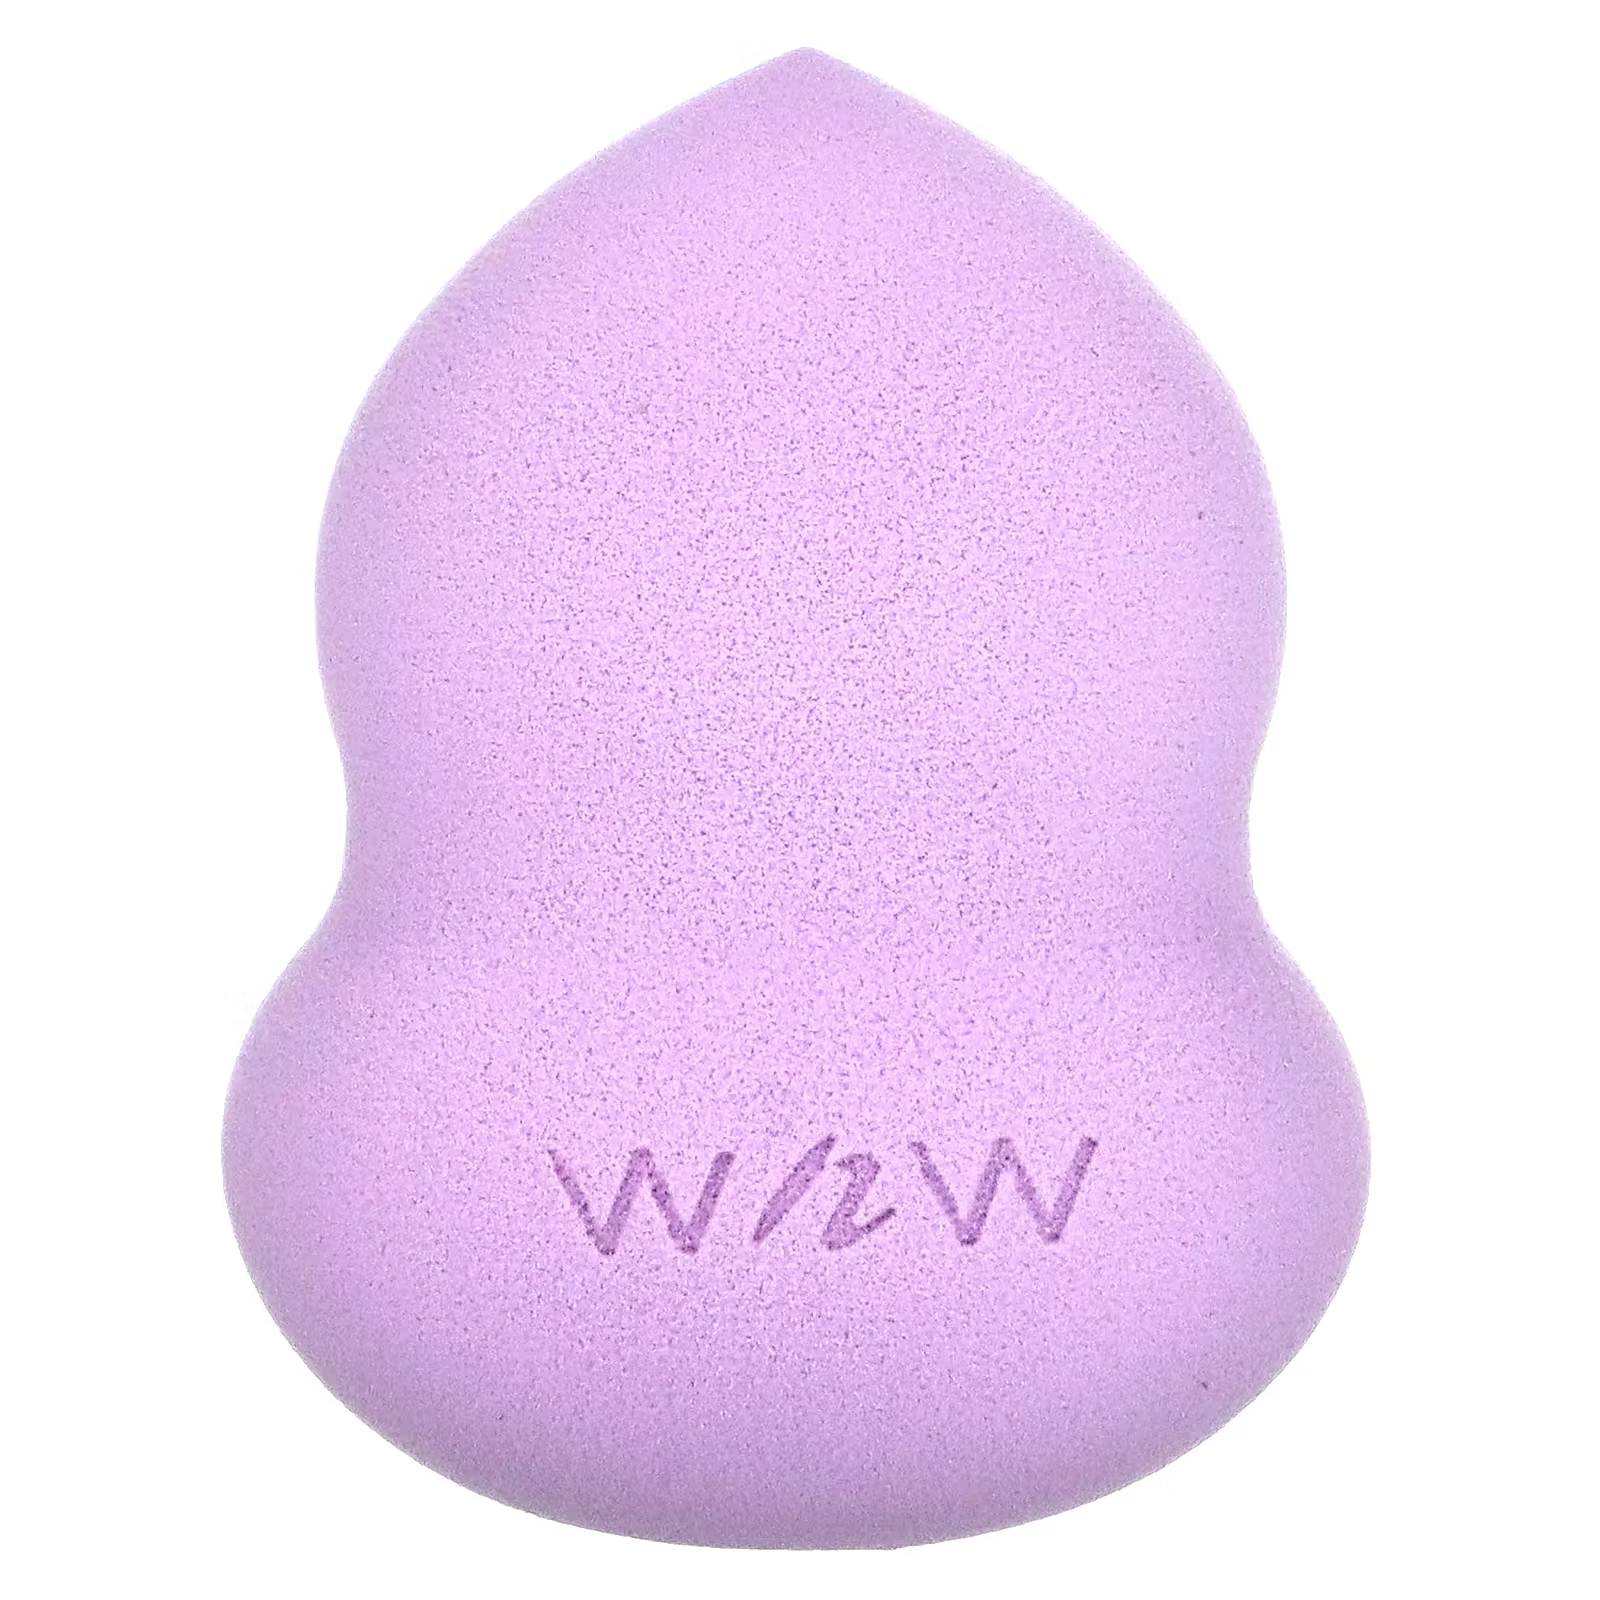 Губка Wet n Wild для макияжа, фиолетовый